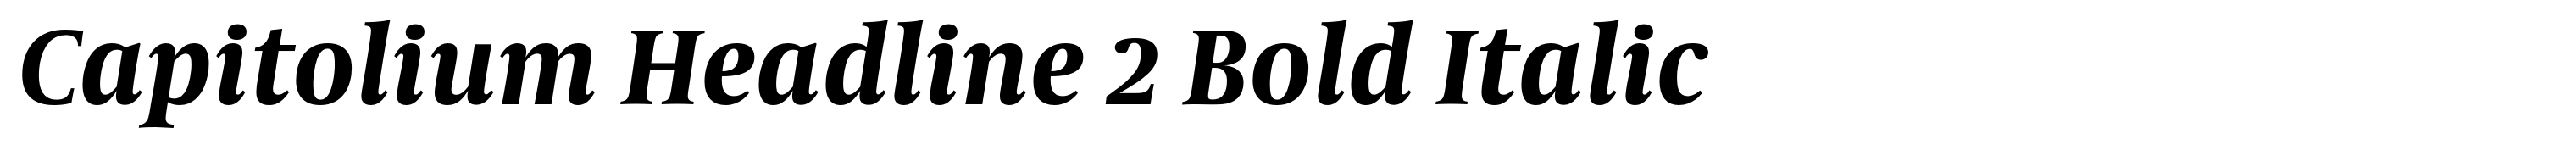 Capitolium Headline 2 Bold Italic